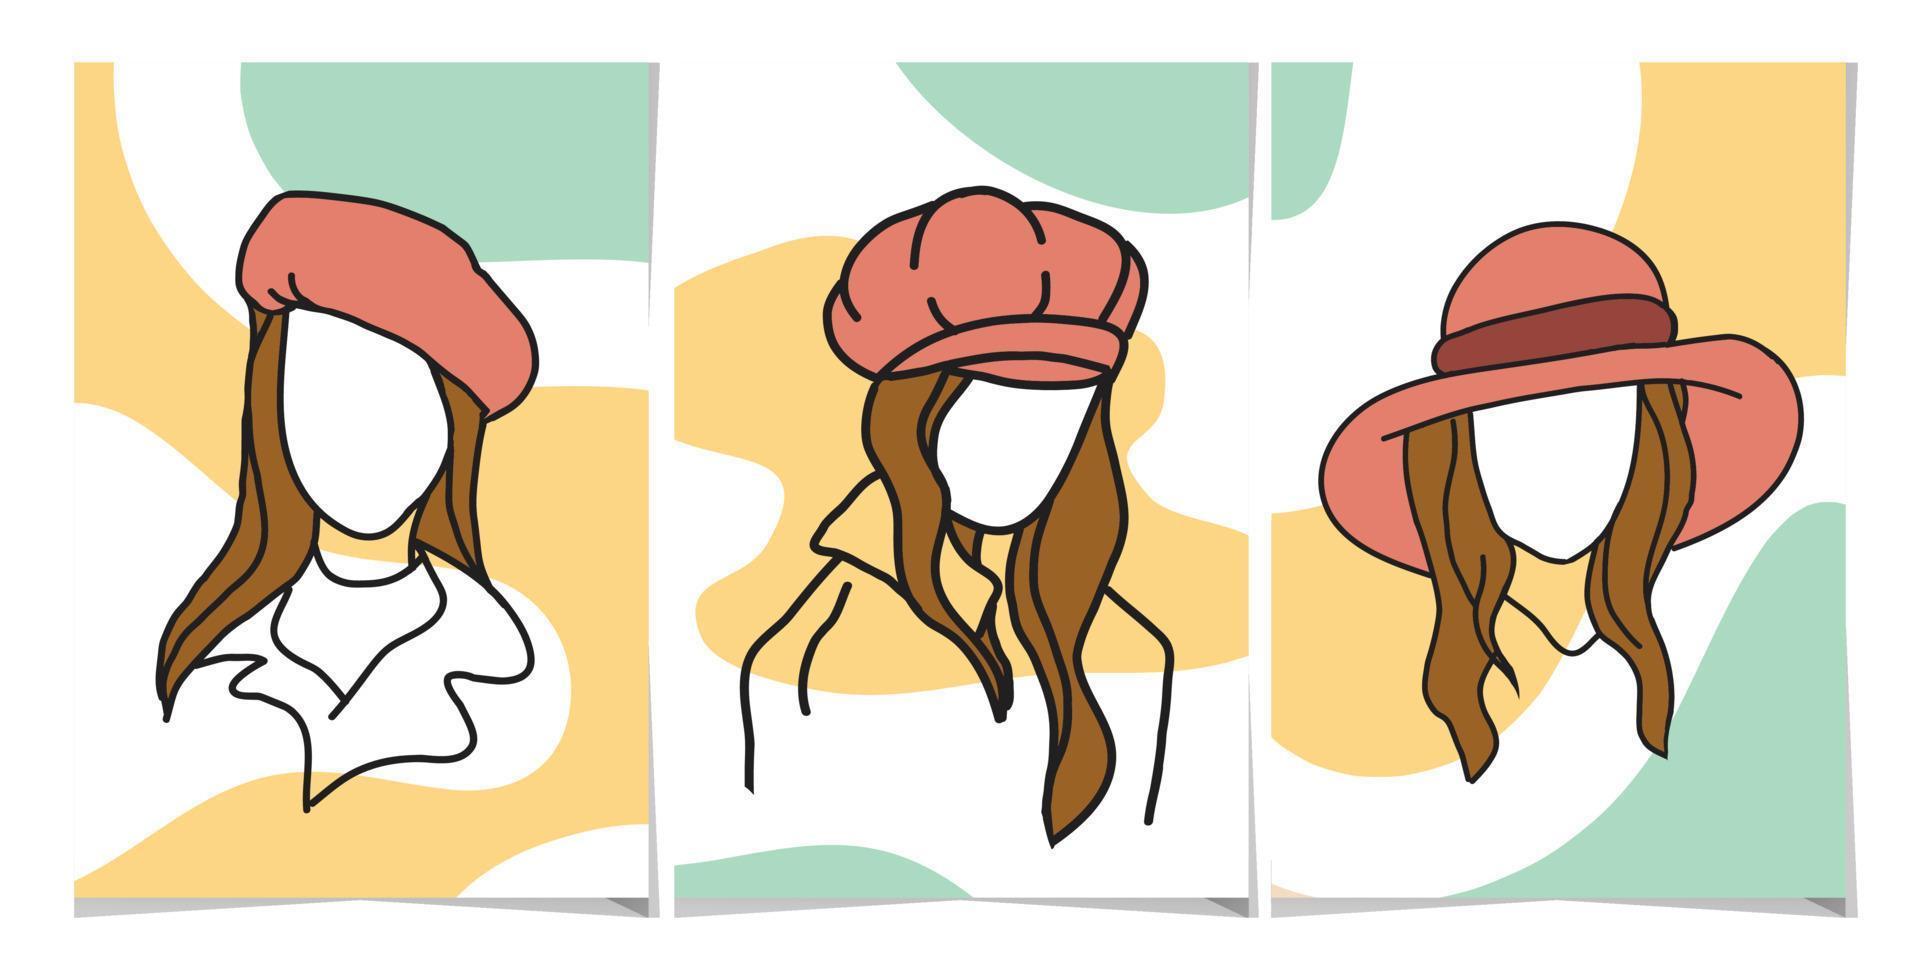 impostato di astratto illustrazione di donna indossare cappello su pastello colore. per manifesto Stampa, cartolina o sociale media. vettore illustrazione.